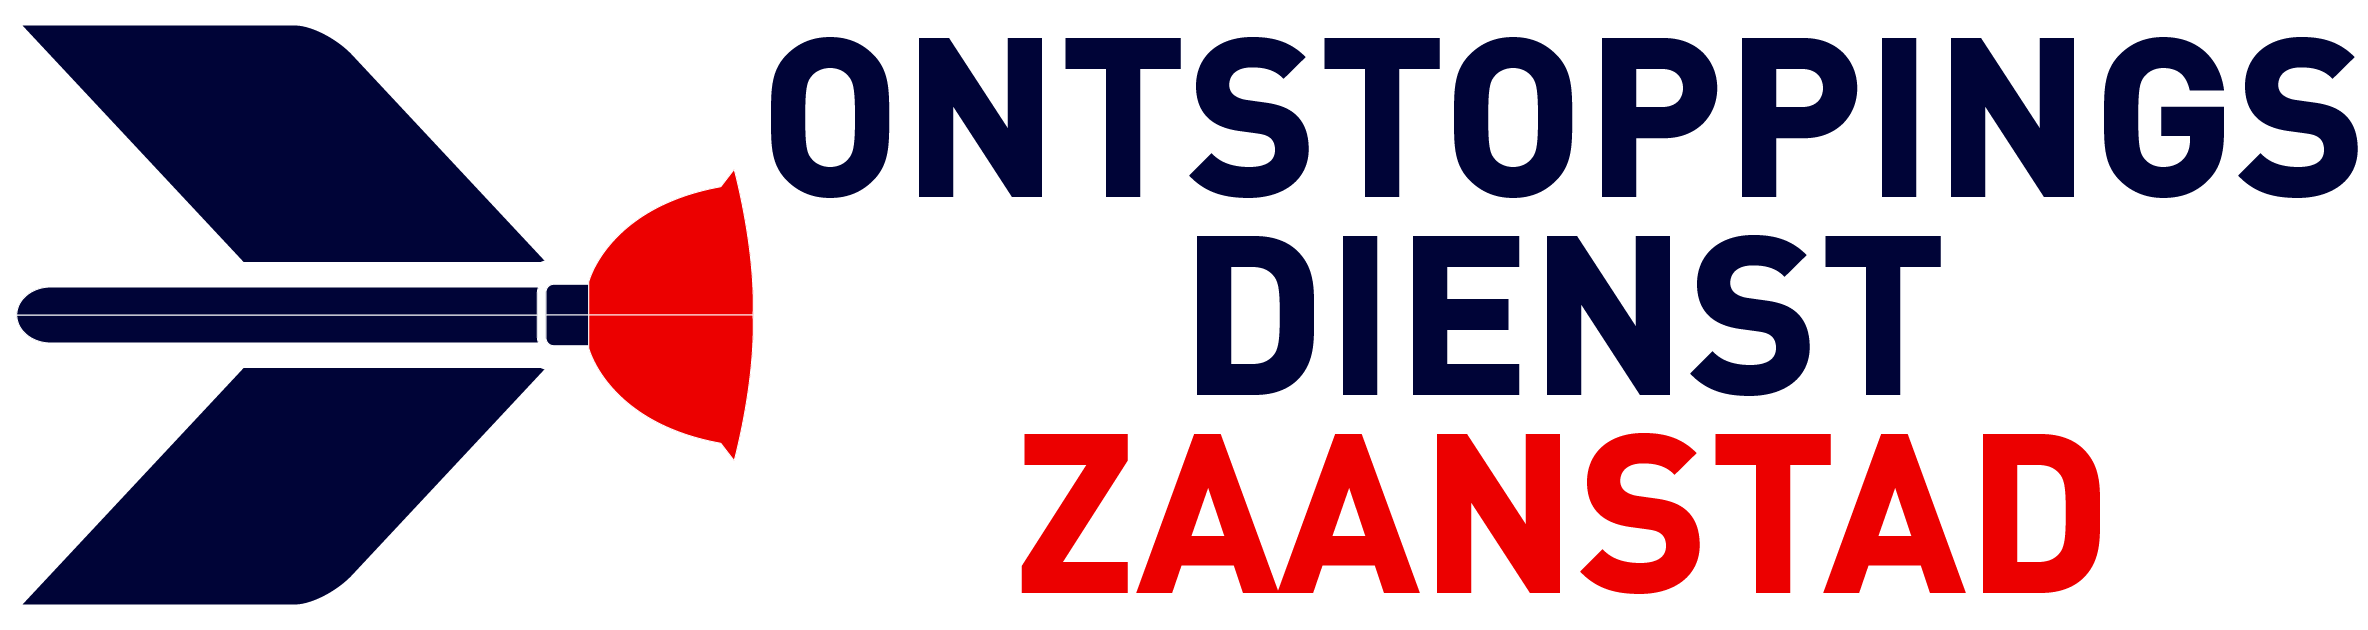 Ontstoppingsdienst Zaanstad logo